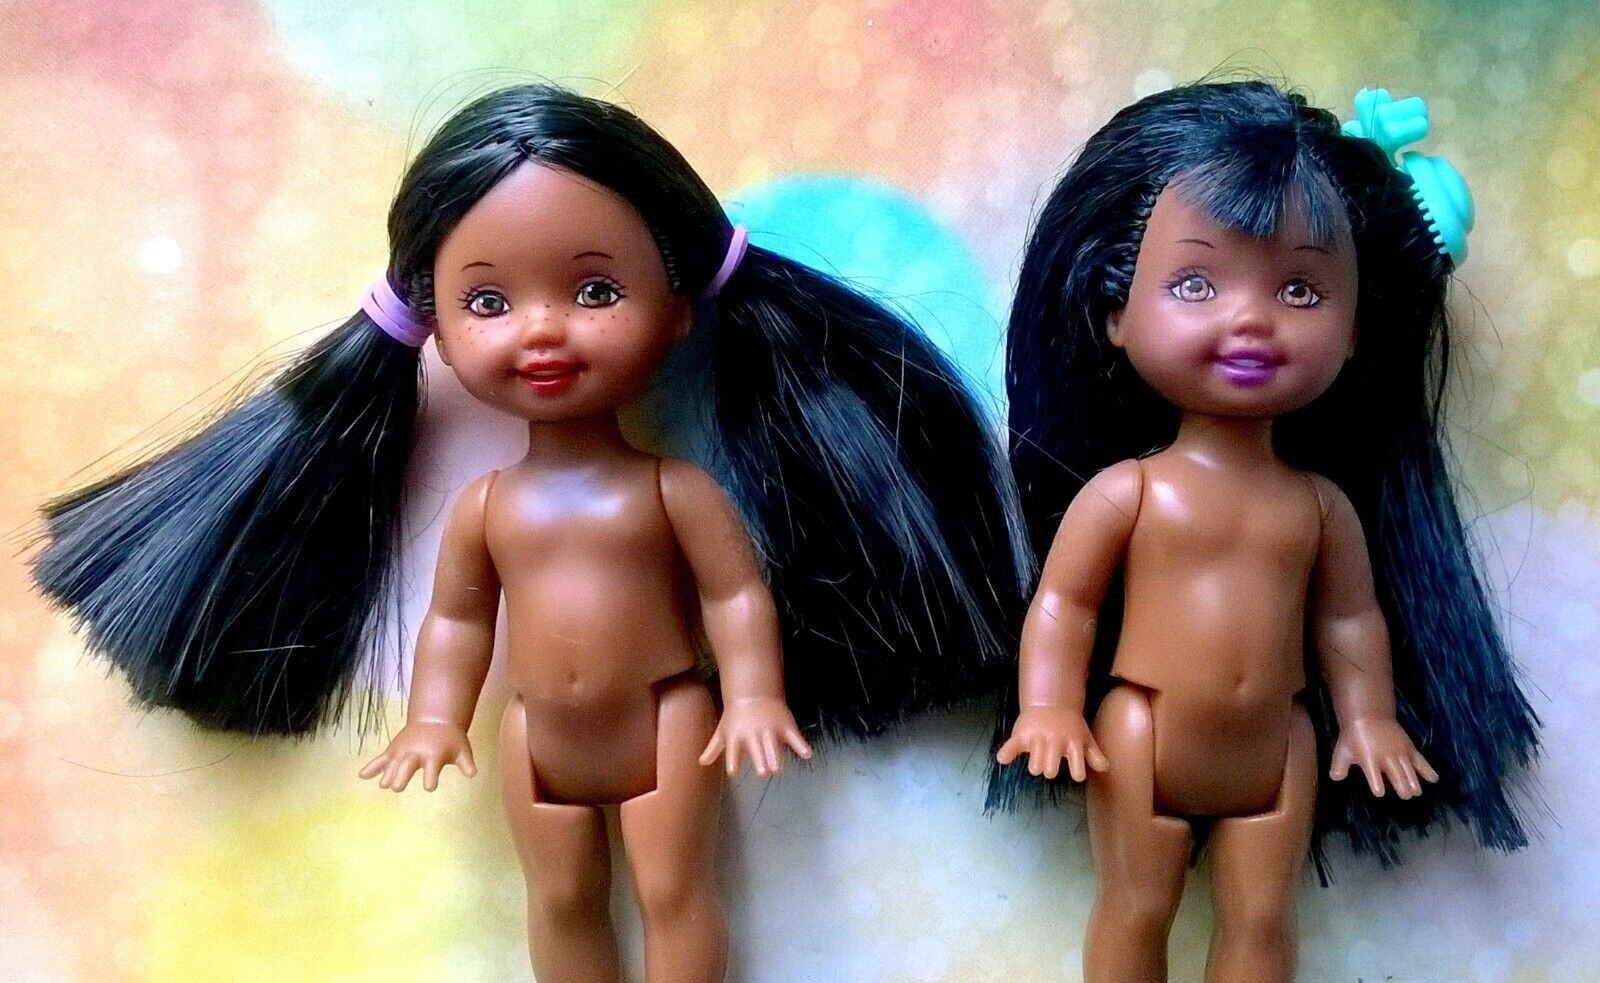 ?Mattel Barbie Kelly nude dolls lot of 2 dolls Lot 4a?